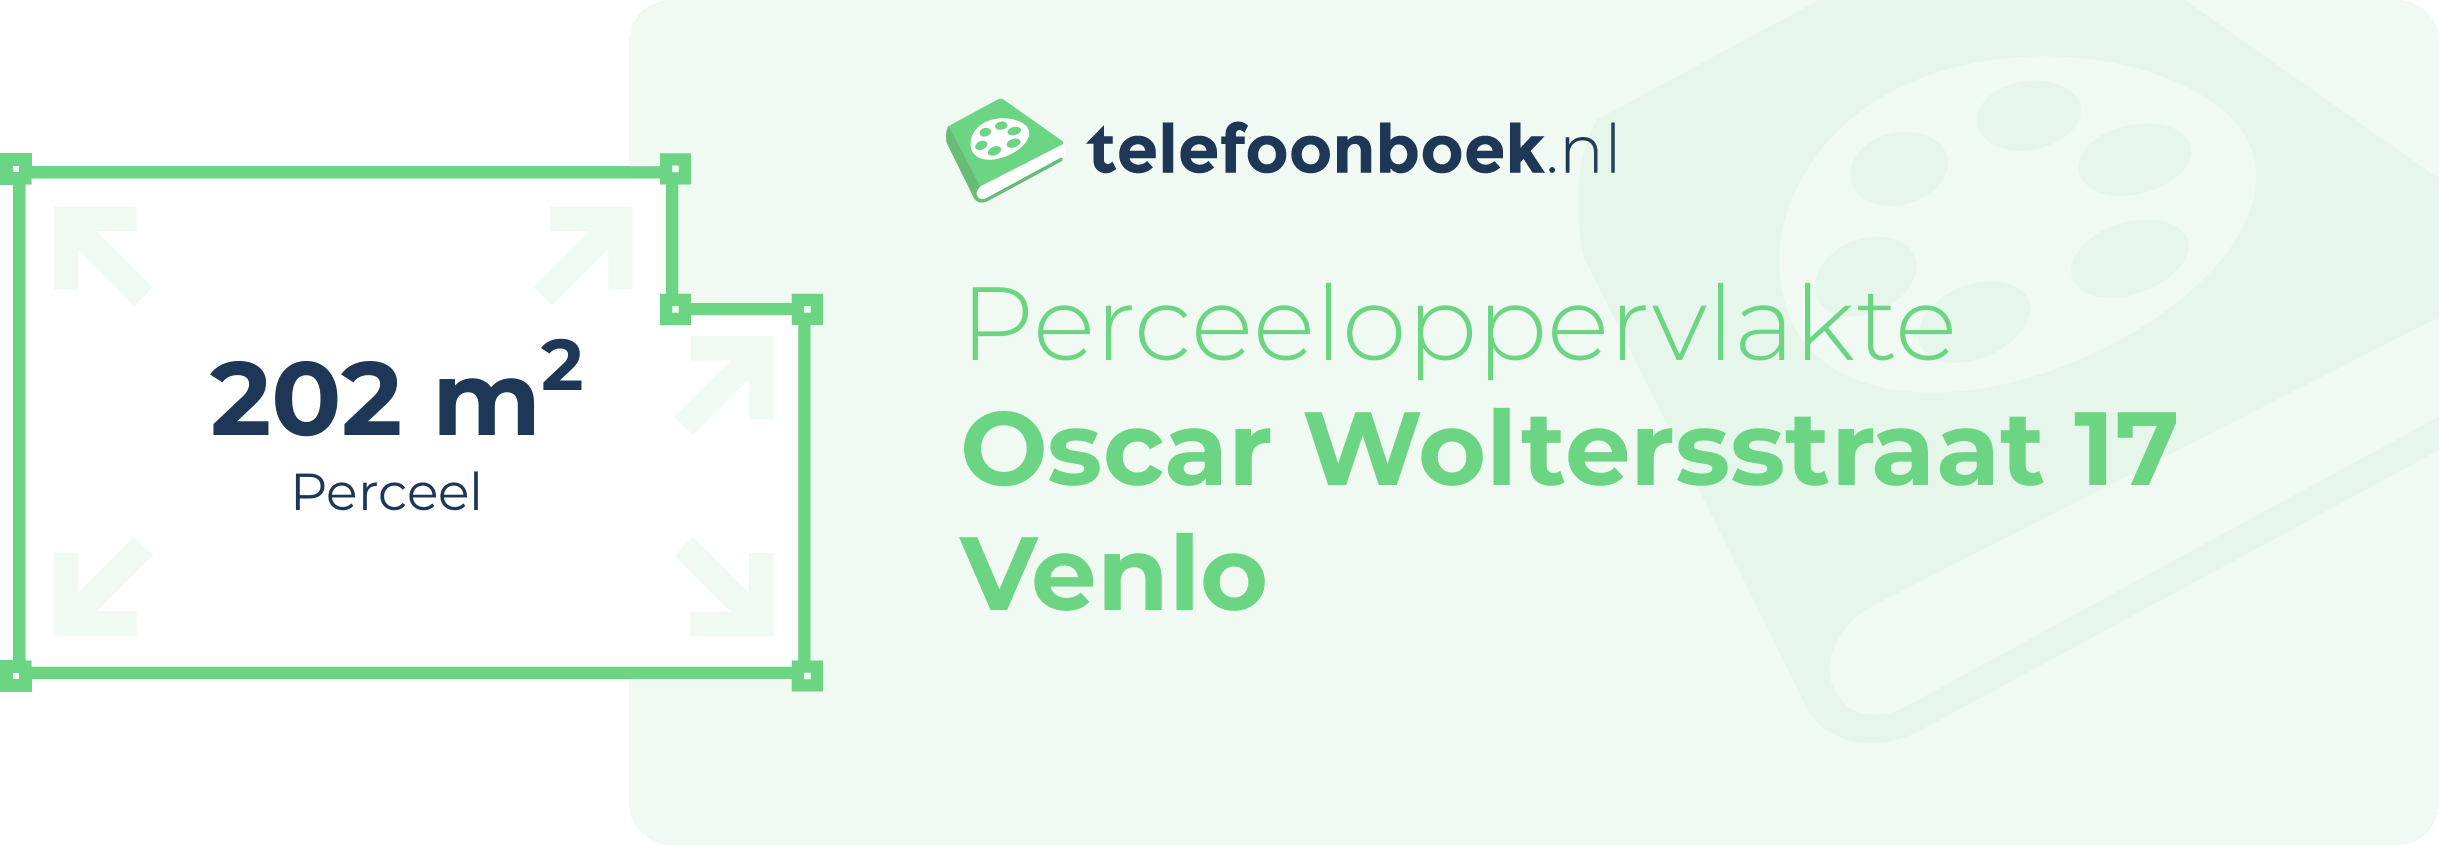 Perceeloppervlakte Oscar Woltersstraat 17 Venlo